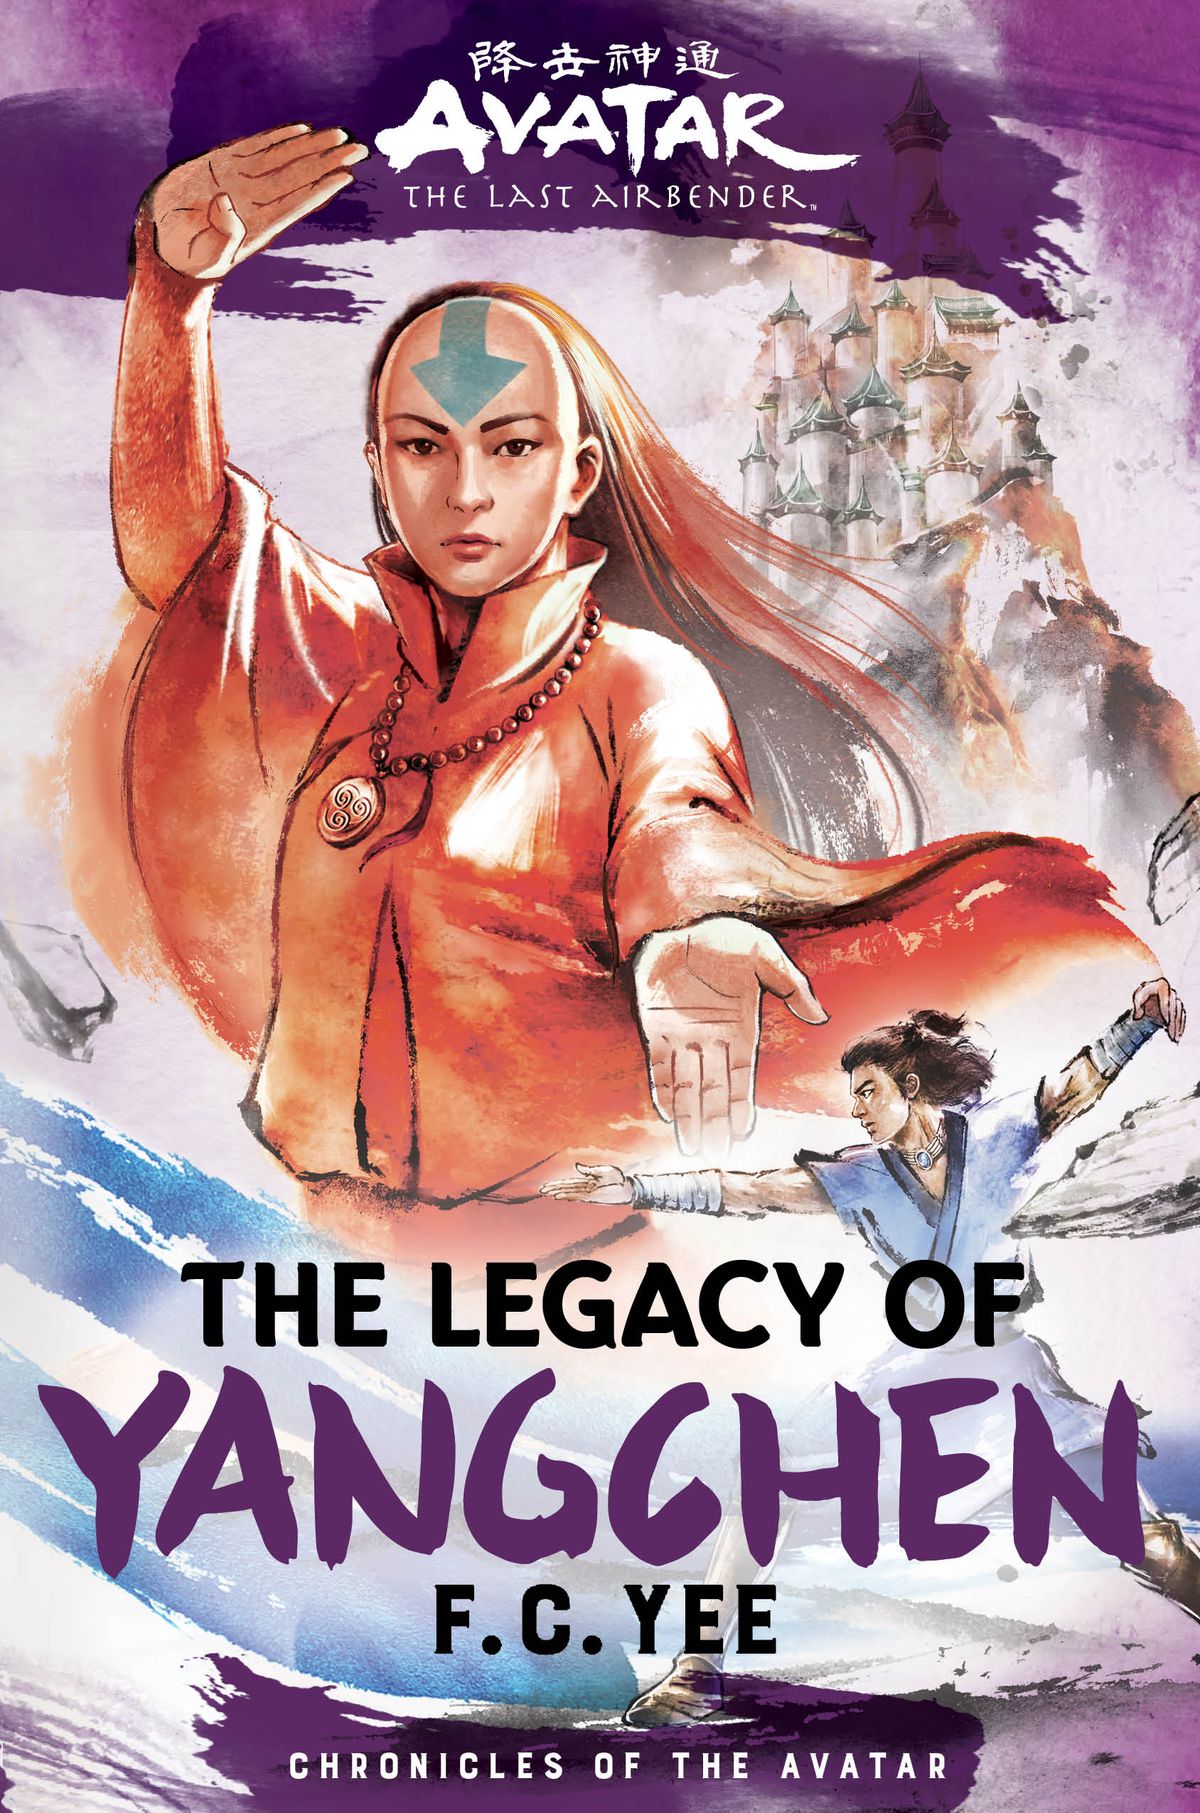 Bokomslaget till FC Yee's Avatar: The Last Airbender-roman The Legacy of Yangchen, som visar en ung airbender i orange med den traditionella halvrakade huvudet och en blå pilpanna-tatuering, med ett slott med vittorn på en snöig bergstopp i fjärran bakom henne, och en manlig waterbender i en kampsportställning infälld under henne